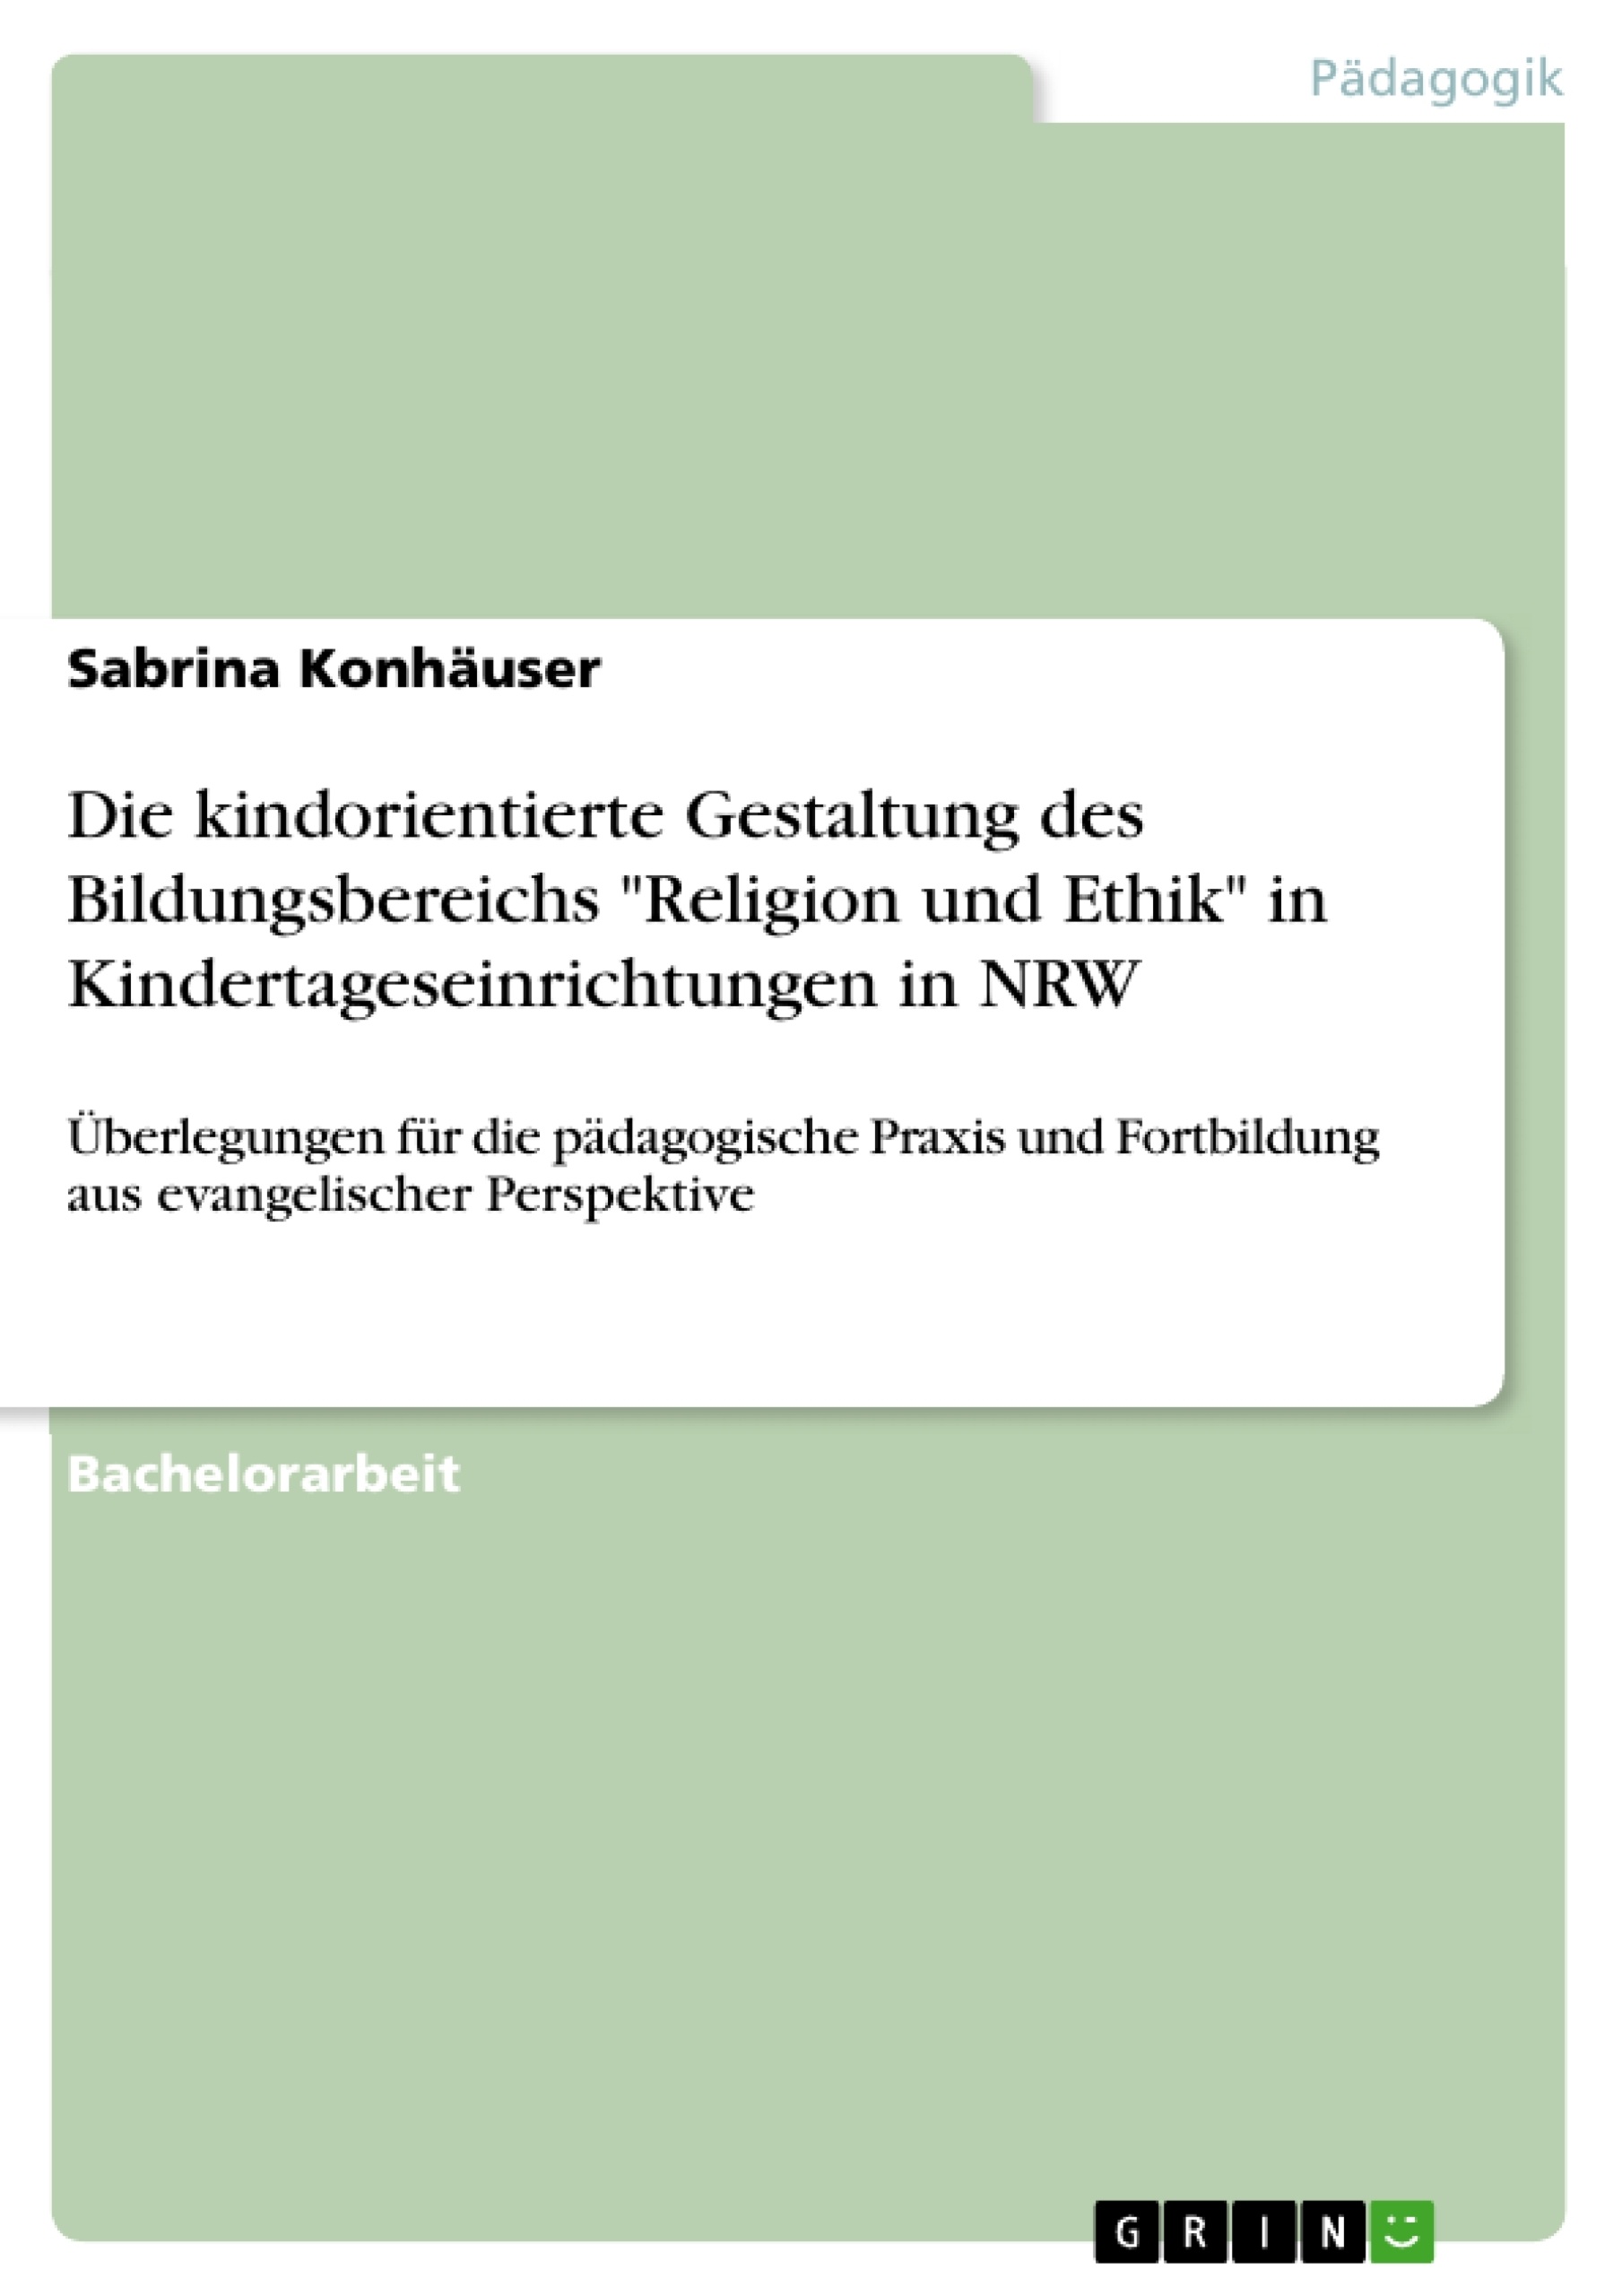 Titre: Die kindorientierte Gestaltung des Bildungsbereichs "Religion und Ethik" in Kindertageseinrichtungen in NRW